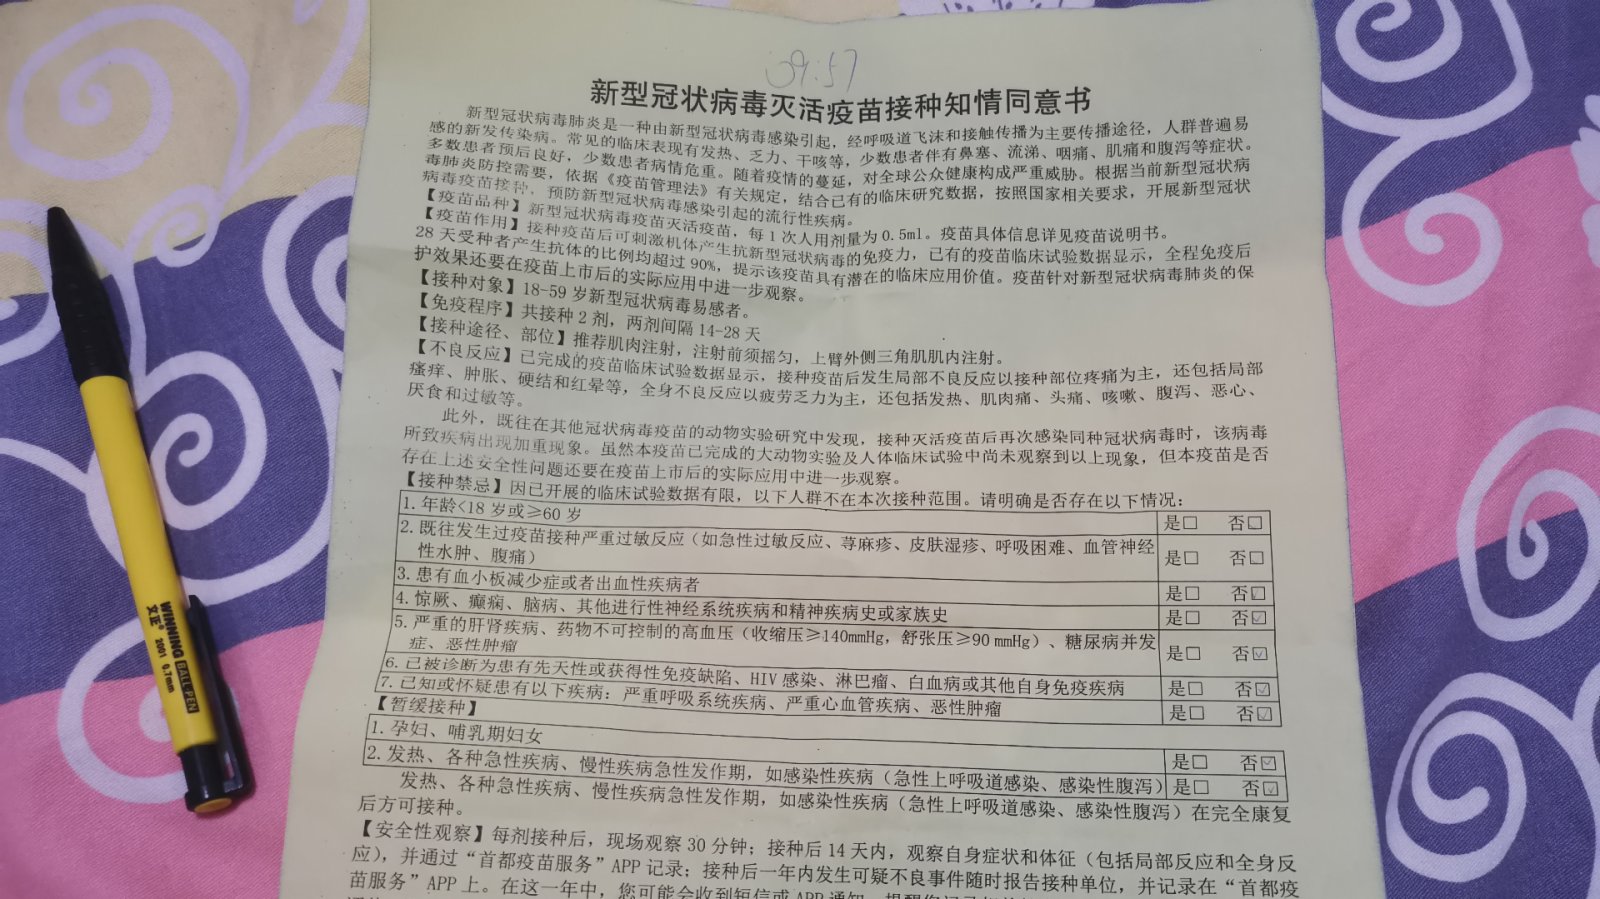 北京慢性病人群接種國產疫苗後無明顯不適